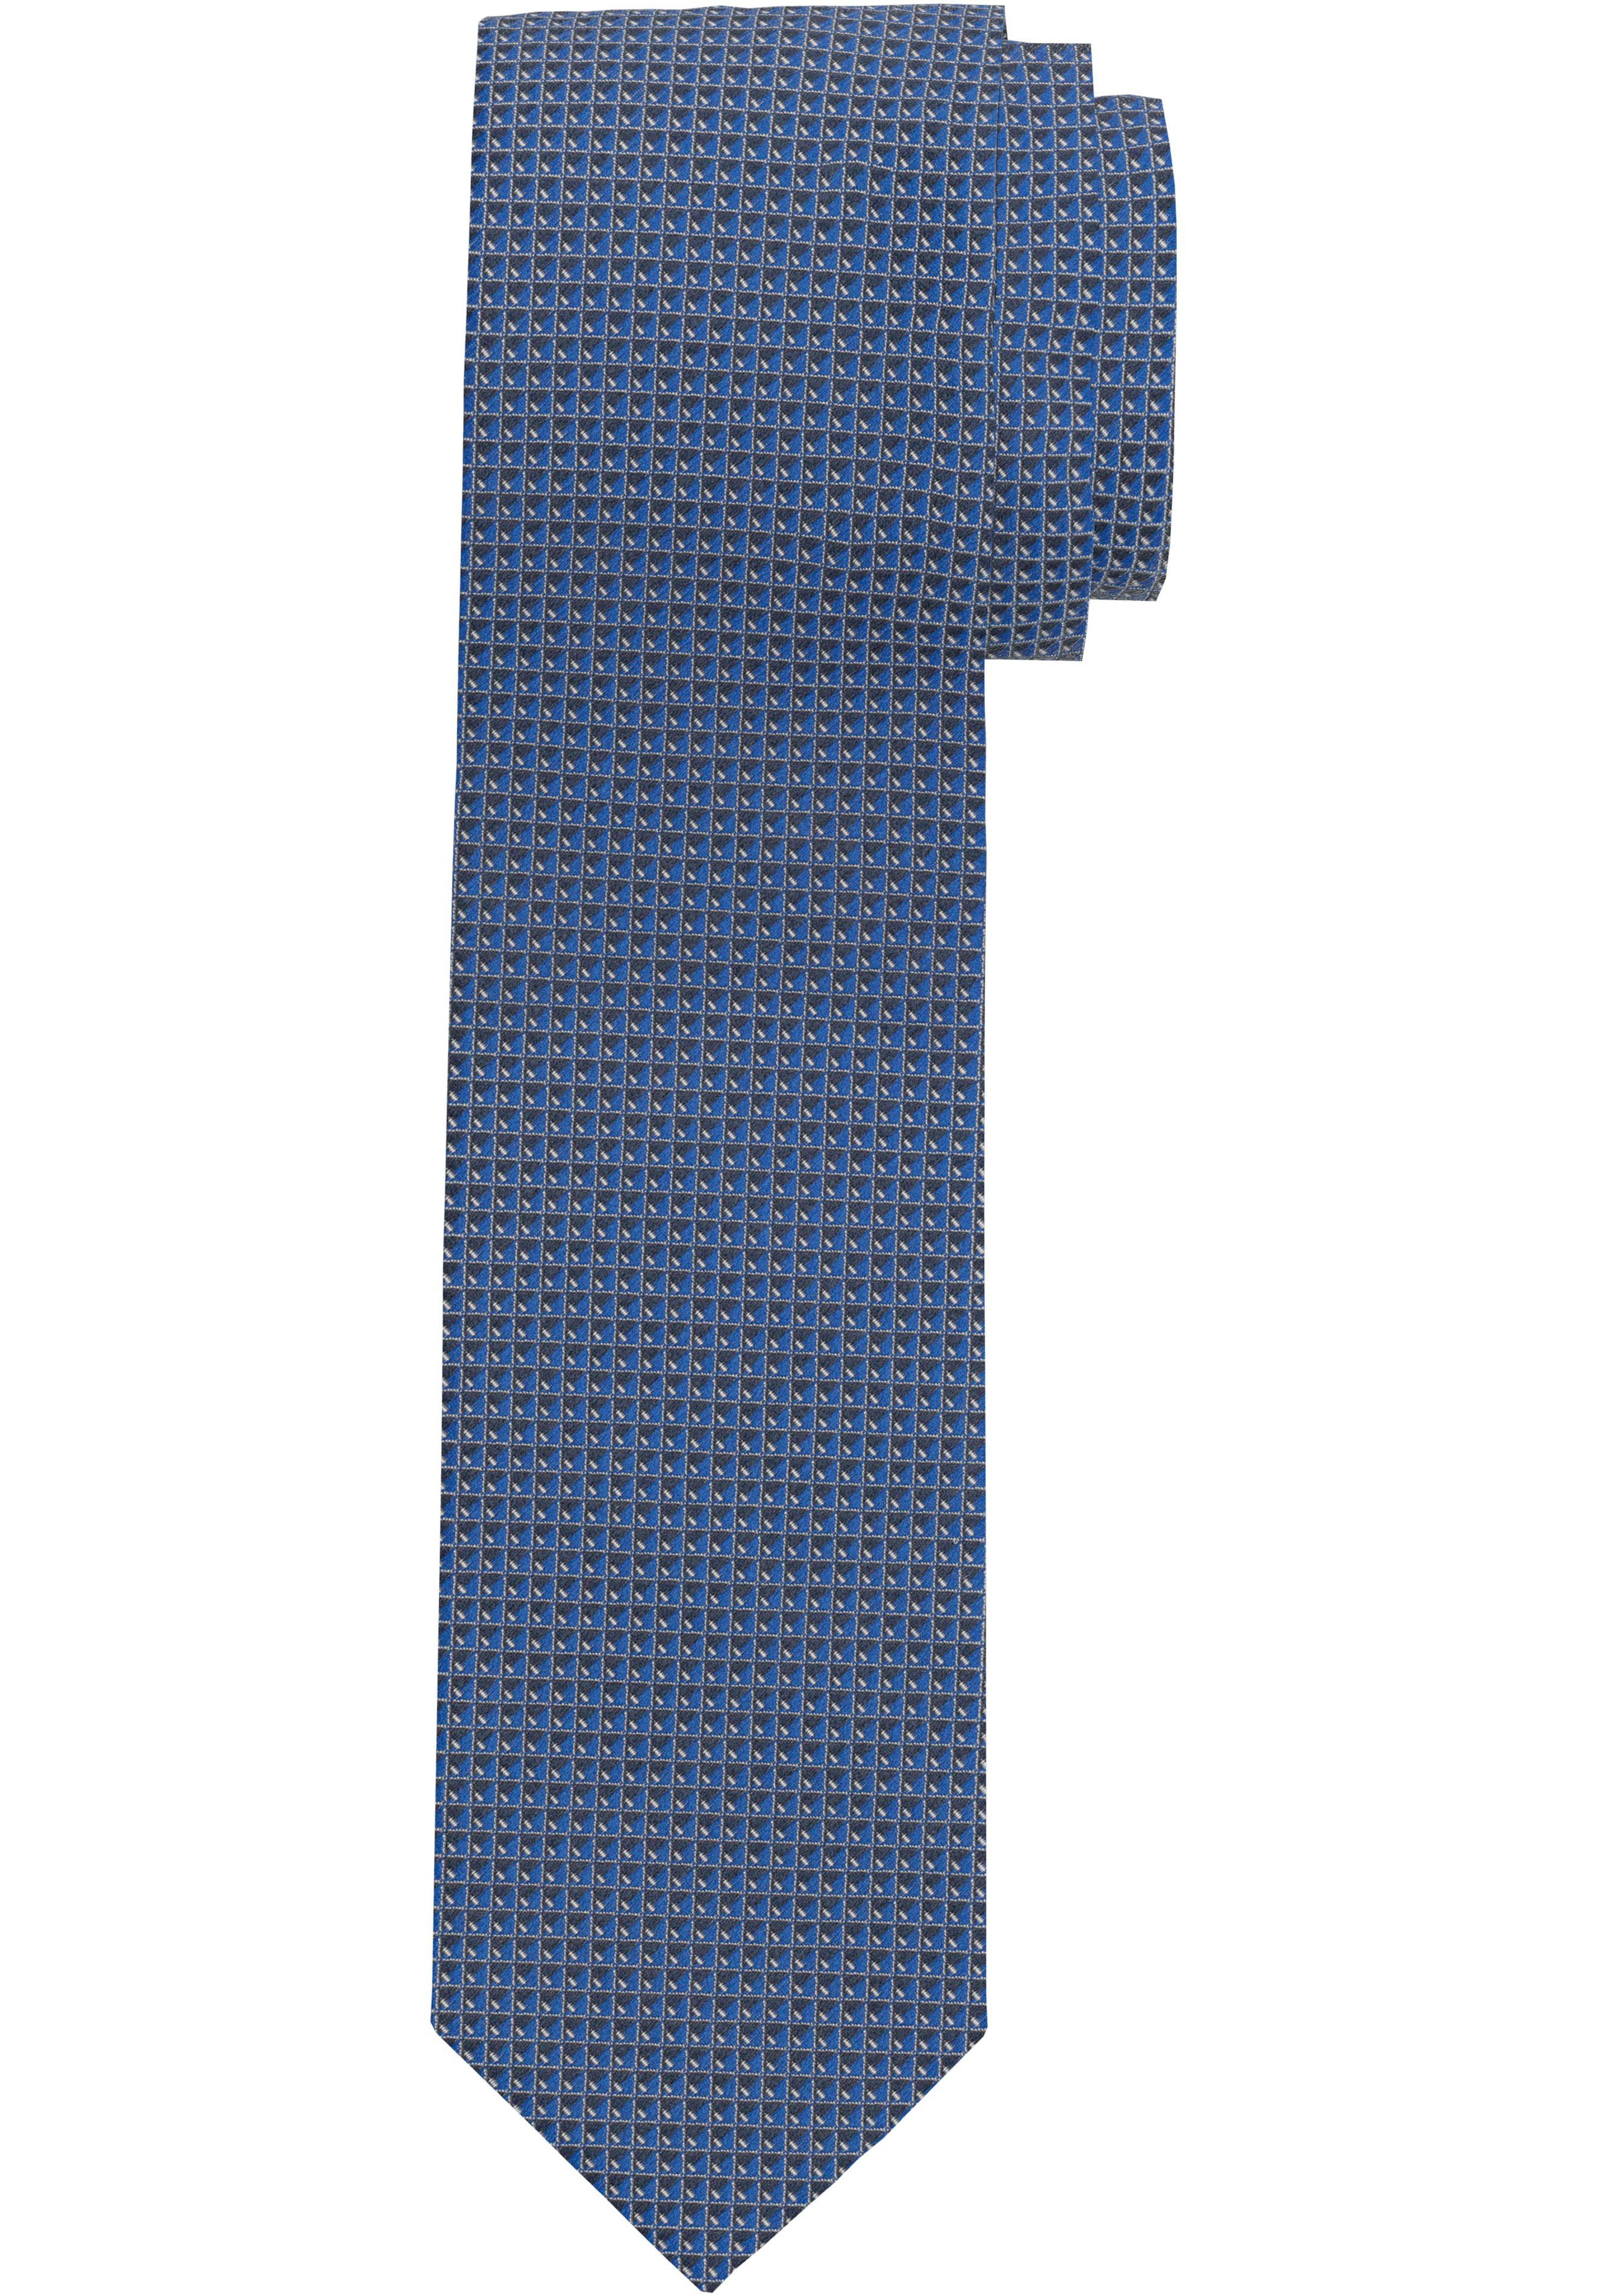 OLYMP Krawatte Krawatte Strukturierte marine